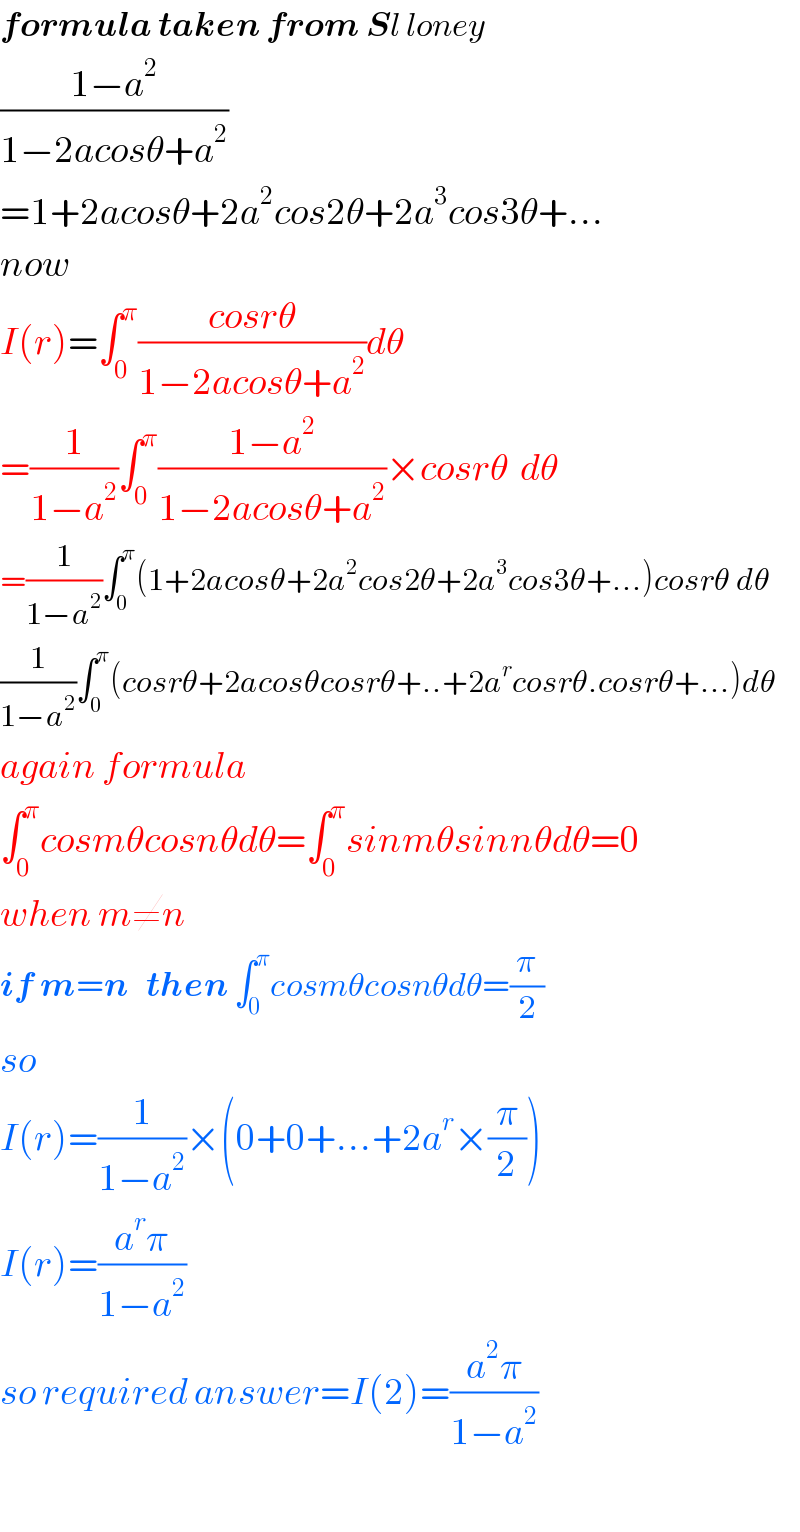 formula taken from Sl loney  ((1−a^2 )/(1−2acosθ+a^2 ))  =1+2acosθ+2a^2 cos2θ+2a^3 cos3θ+...  now   I(r)=∫_0 ^π ((cosrθ)/(1−2acosθ+a^2 ))dθ  =(1/(1−a^2 ))∫_0 ^π ((1−a^2 )/(1−2acosθ+a^2 ))×cosrθ  dθ  =(1/(1−a^2 ))∫_0 ^π (1+2acosθ+2a^2 cos2θ+2a^3 cos3θ+...)cosrθ dθ  (1/(1−a^2 ))∫_0 ^π (cosrθ+2acosθcosrθ+..+2a^r cosrθ.cosrθ+...)dθ  again formula  ∫_0 ^π cosmθcosnθdθ=∫_0 ^π sinmθsinnθdθ=0  when m≠n  if m=n   then ∫_0 ^π cosmθcosnθdθ=(π/2)  so   I(r)=(1/(1−a^2 ))×(0+0+...+2a^r ×(π/2))  I(r)=((a^r π)/(1−a^2 ))  so required answer=I(2)=((a^2 π)/(1−a^2 ))    